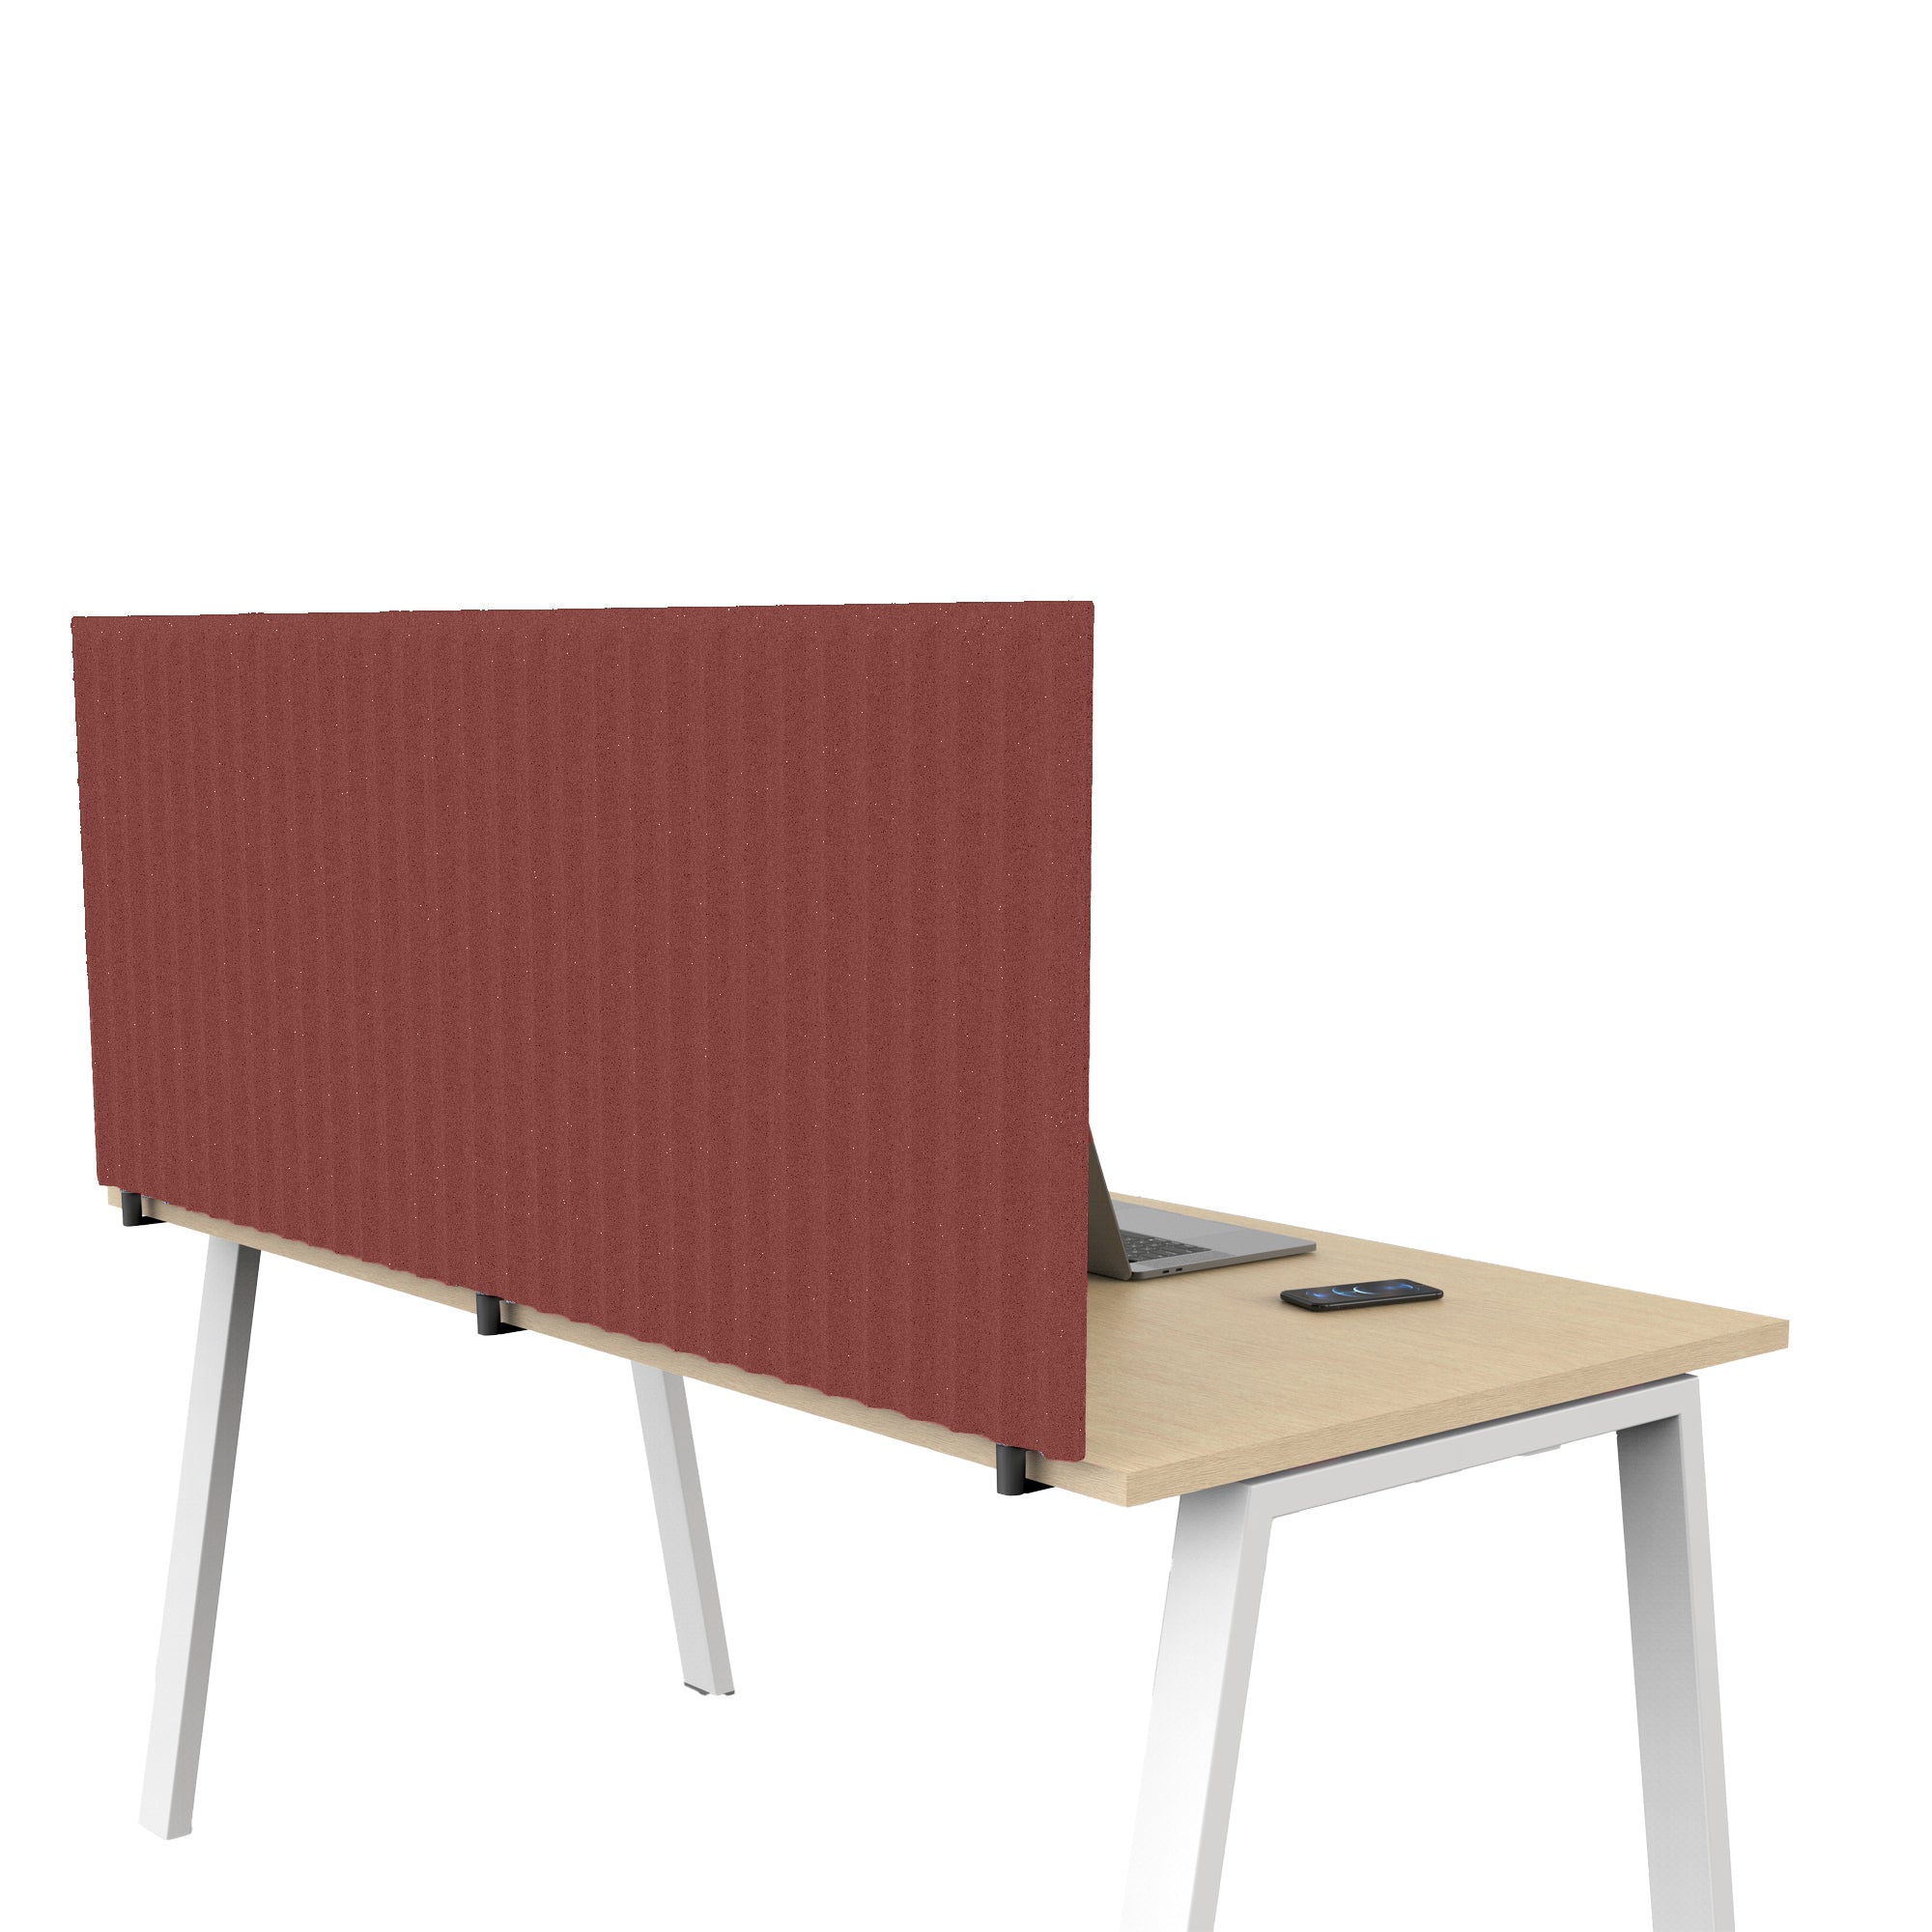 artexport-pannello-acustico-scrivania-l175xh40cm-c-morsetti-neri-rosso-stripes